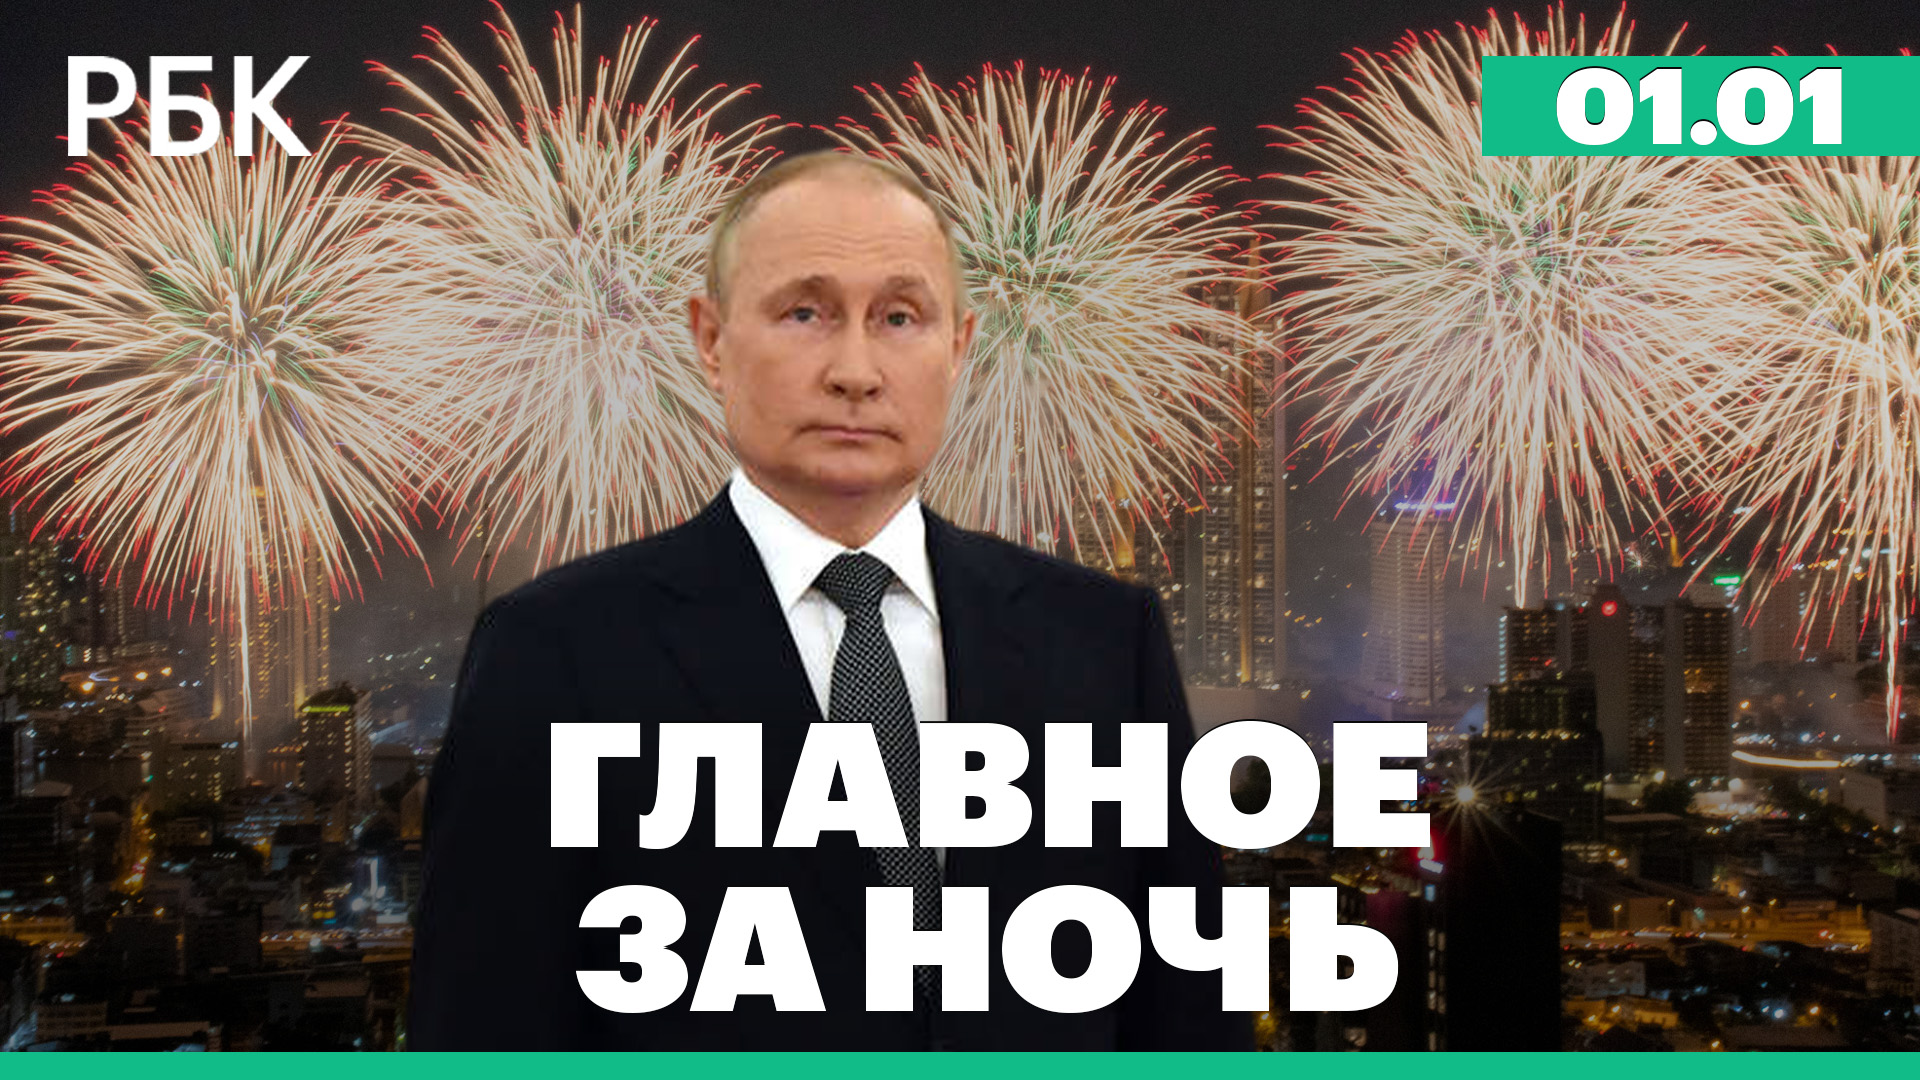 Новогодние фейерверки по всему миру. Обстрел ВСУ больницы в ЛНР. Главное из обращения Путина